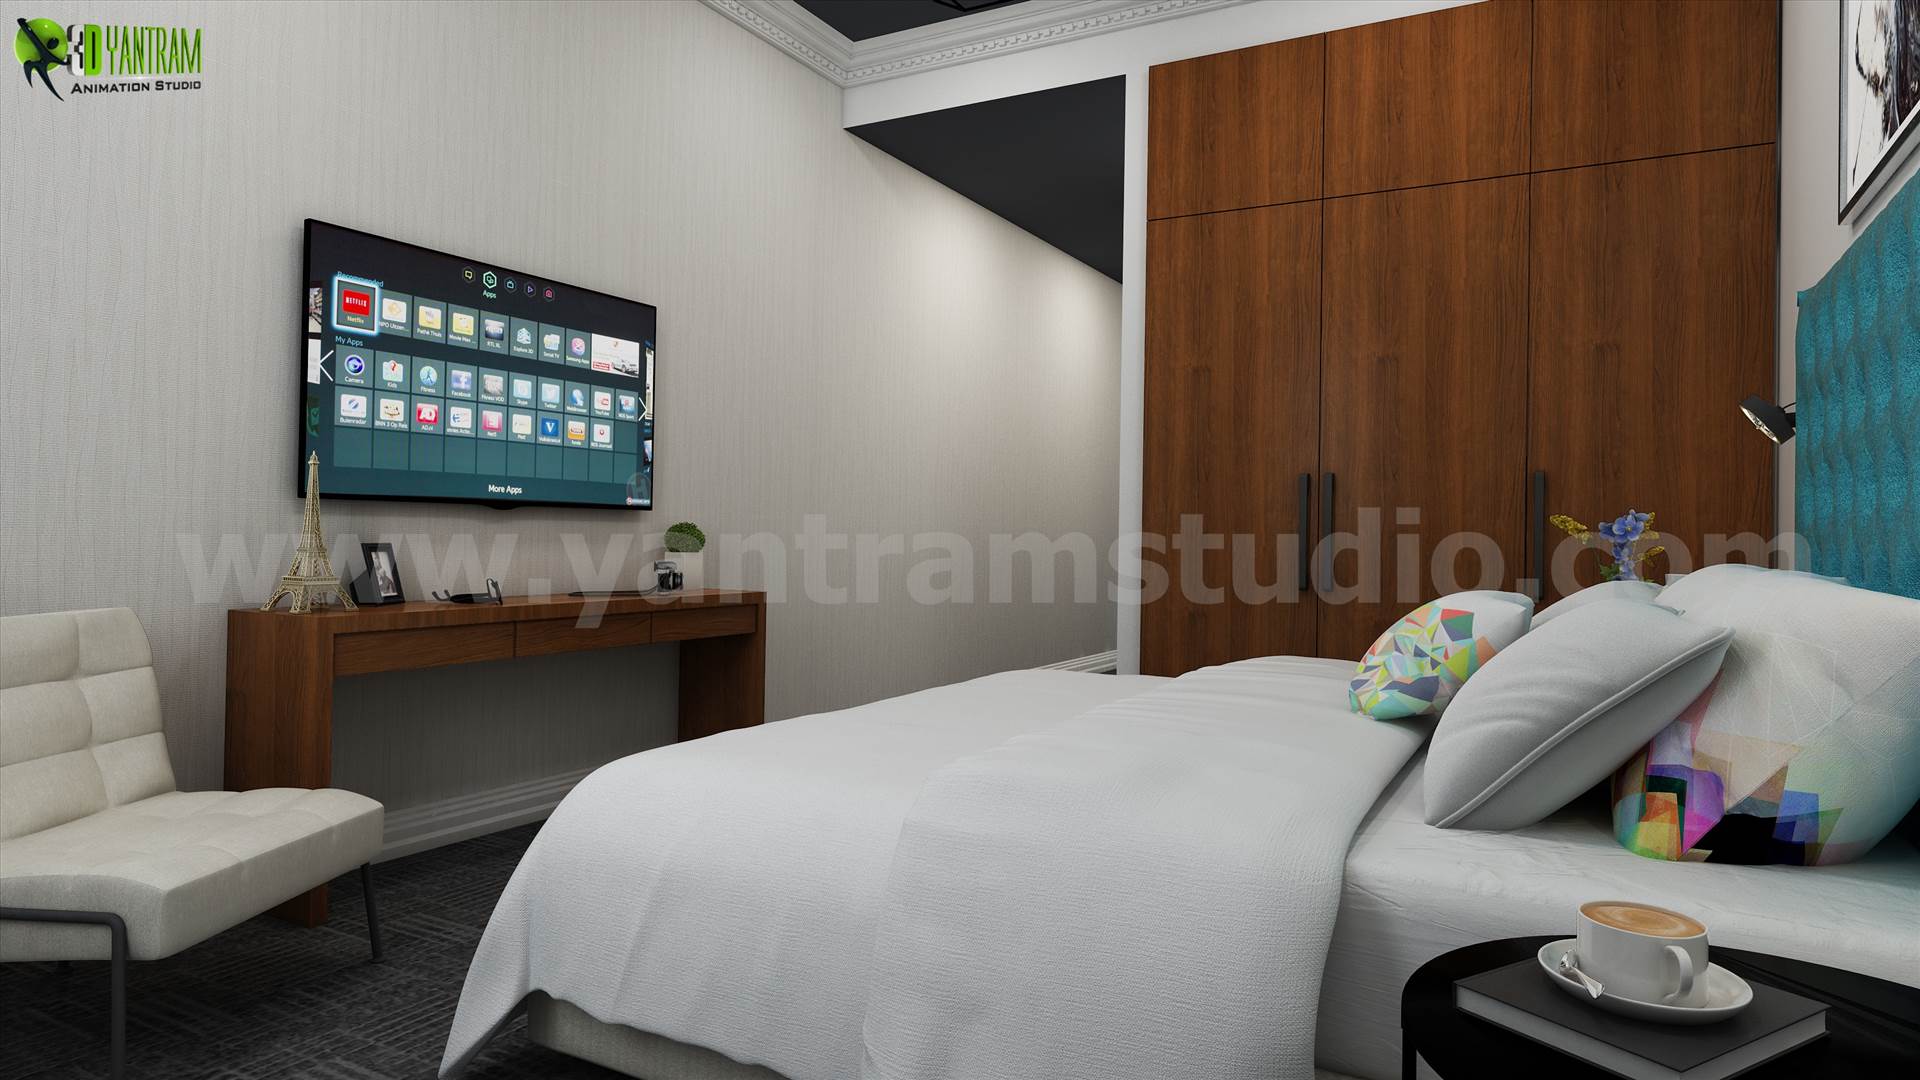 3D Interior Rendering Style  - interior design firms by Yantramarchitecturaldesignstudio